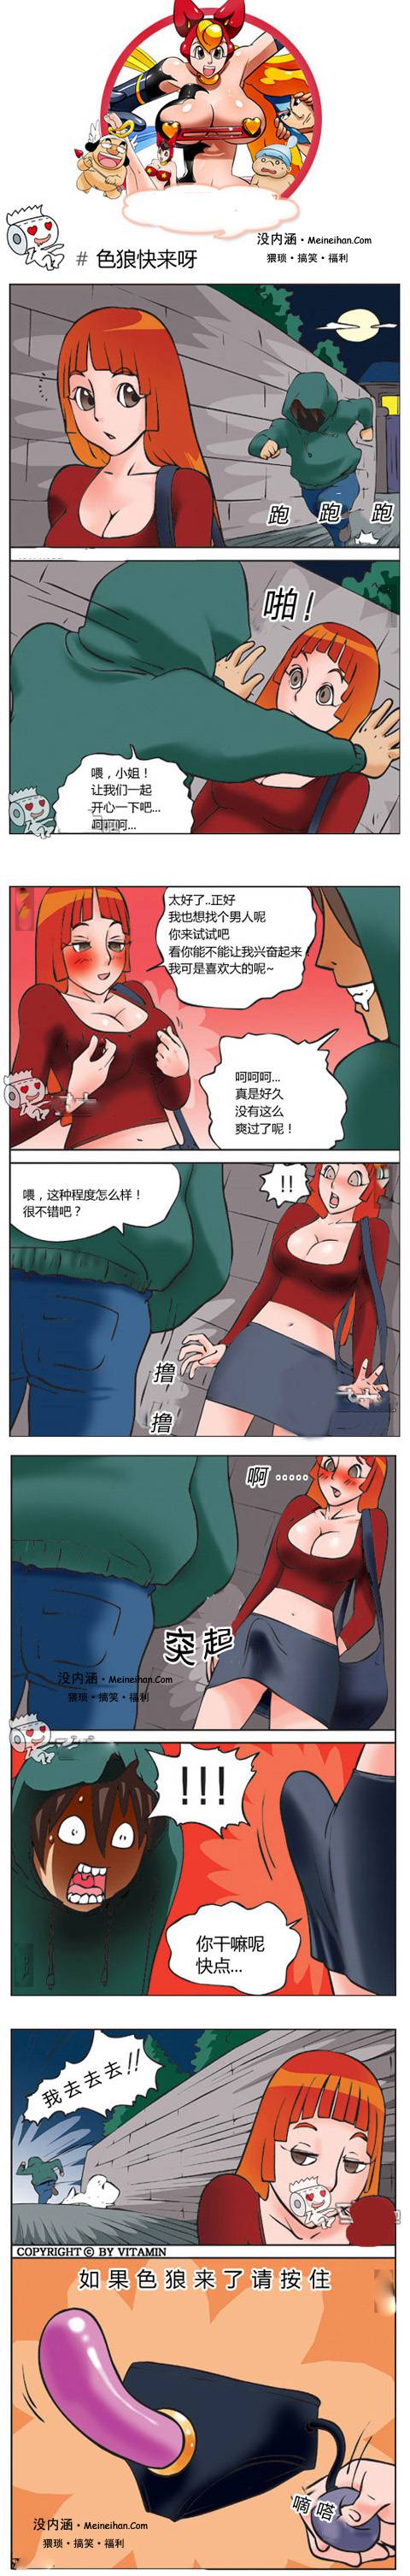 邪恶漫画爆笑囧图第107刊：秘密